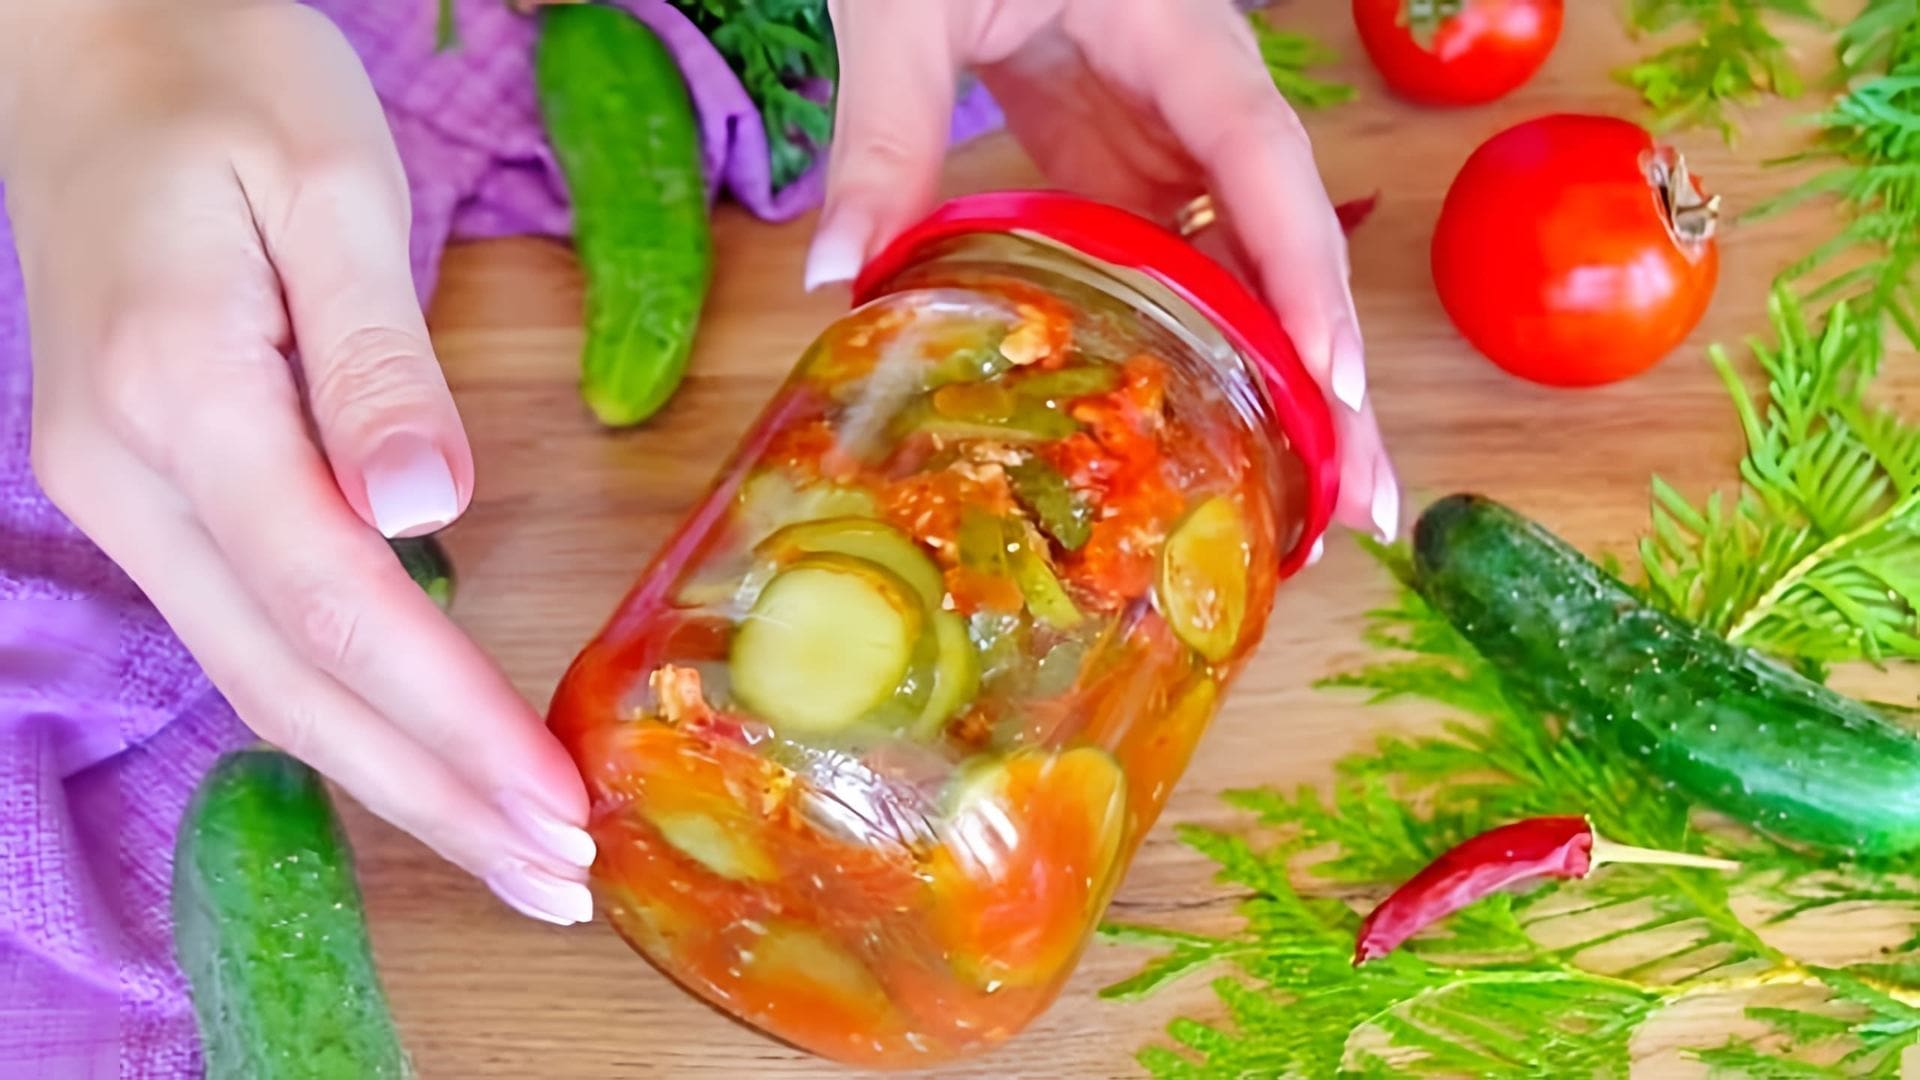 В этом видео представлен рецепт салата из огурцов по-грузински, который можно приготовить на зиму